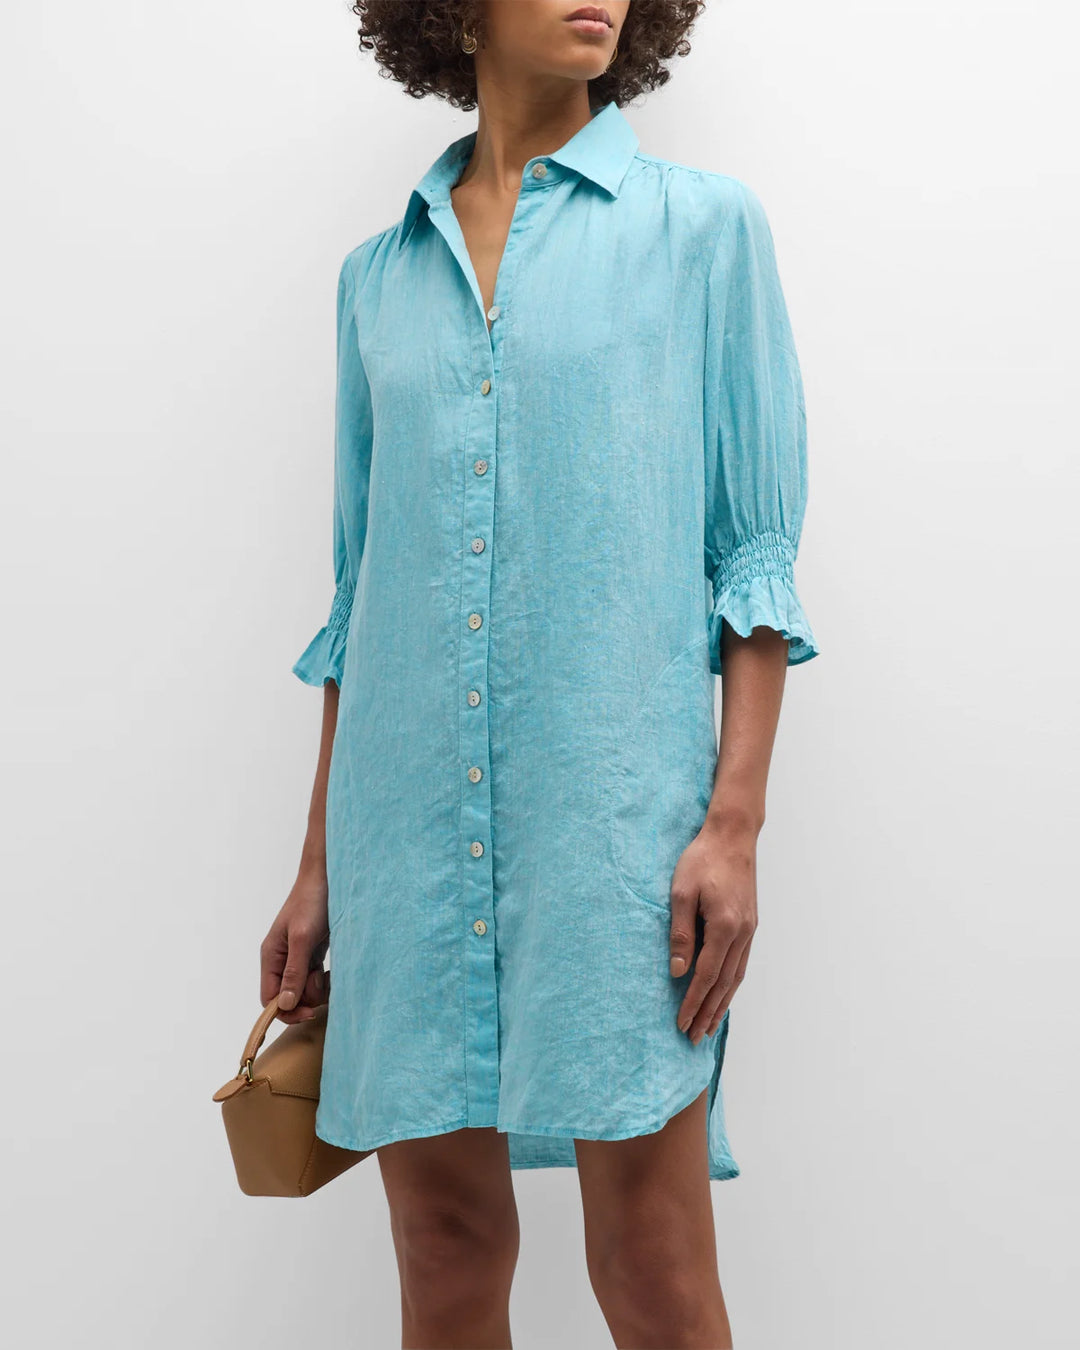 Finley Miller Dress | Caribbean Blue